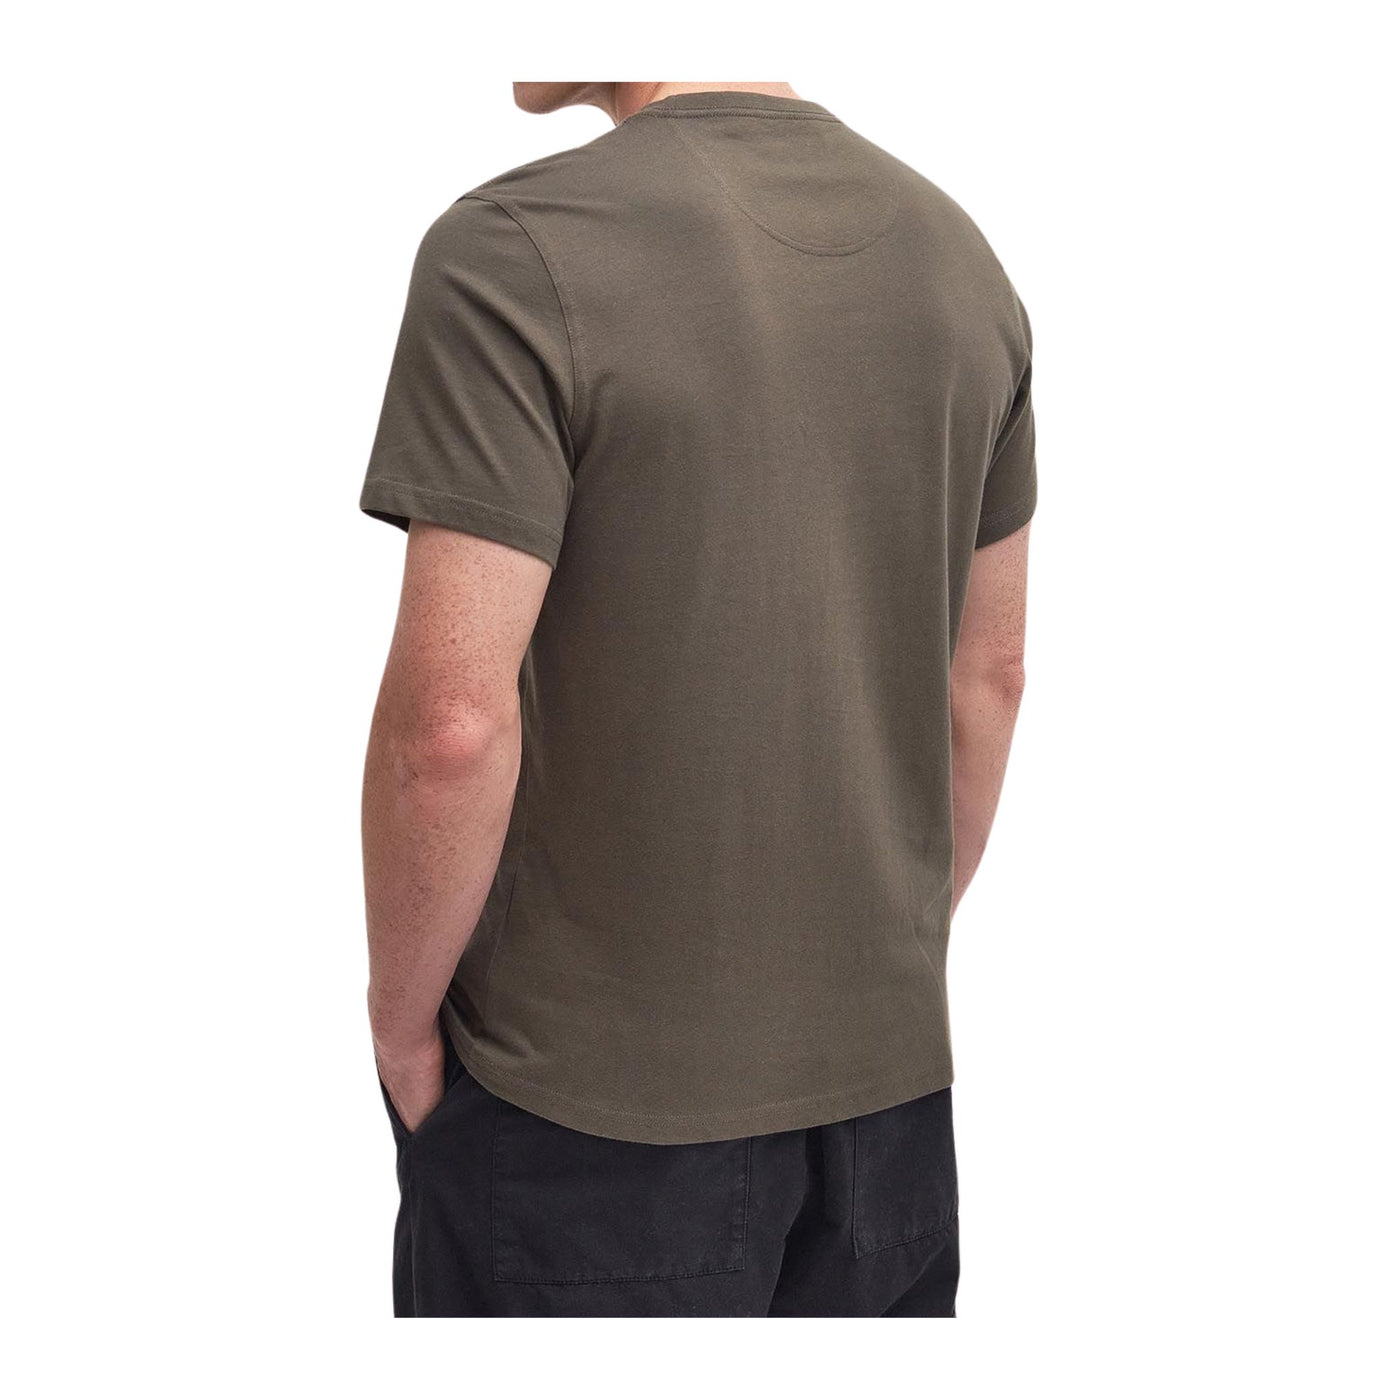  T-shirt Uomo realizzata interamente in cotone con logo a contrasto 